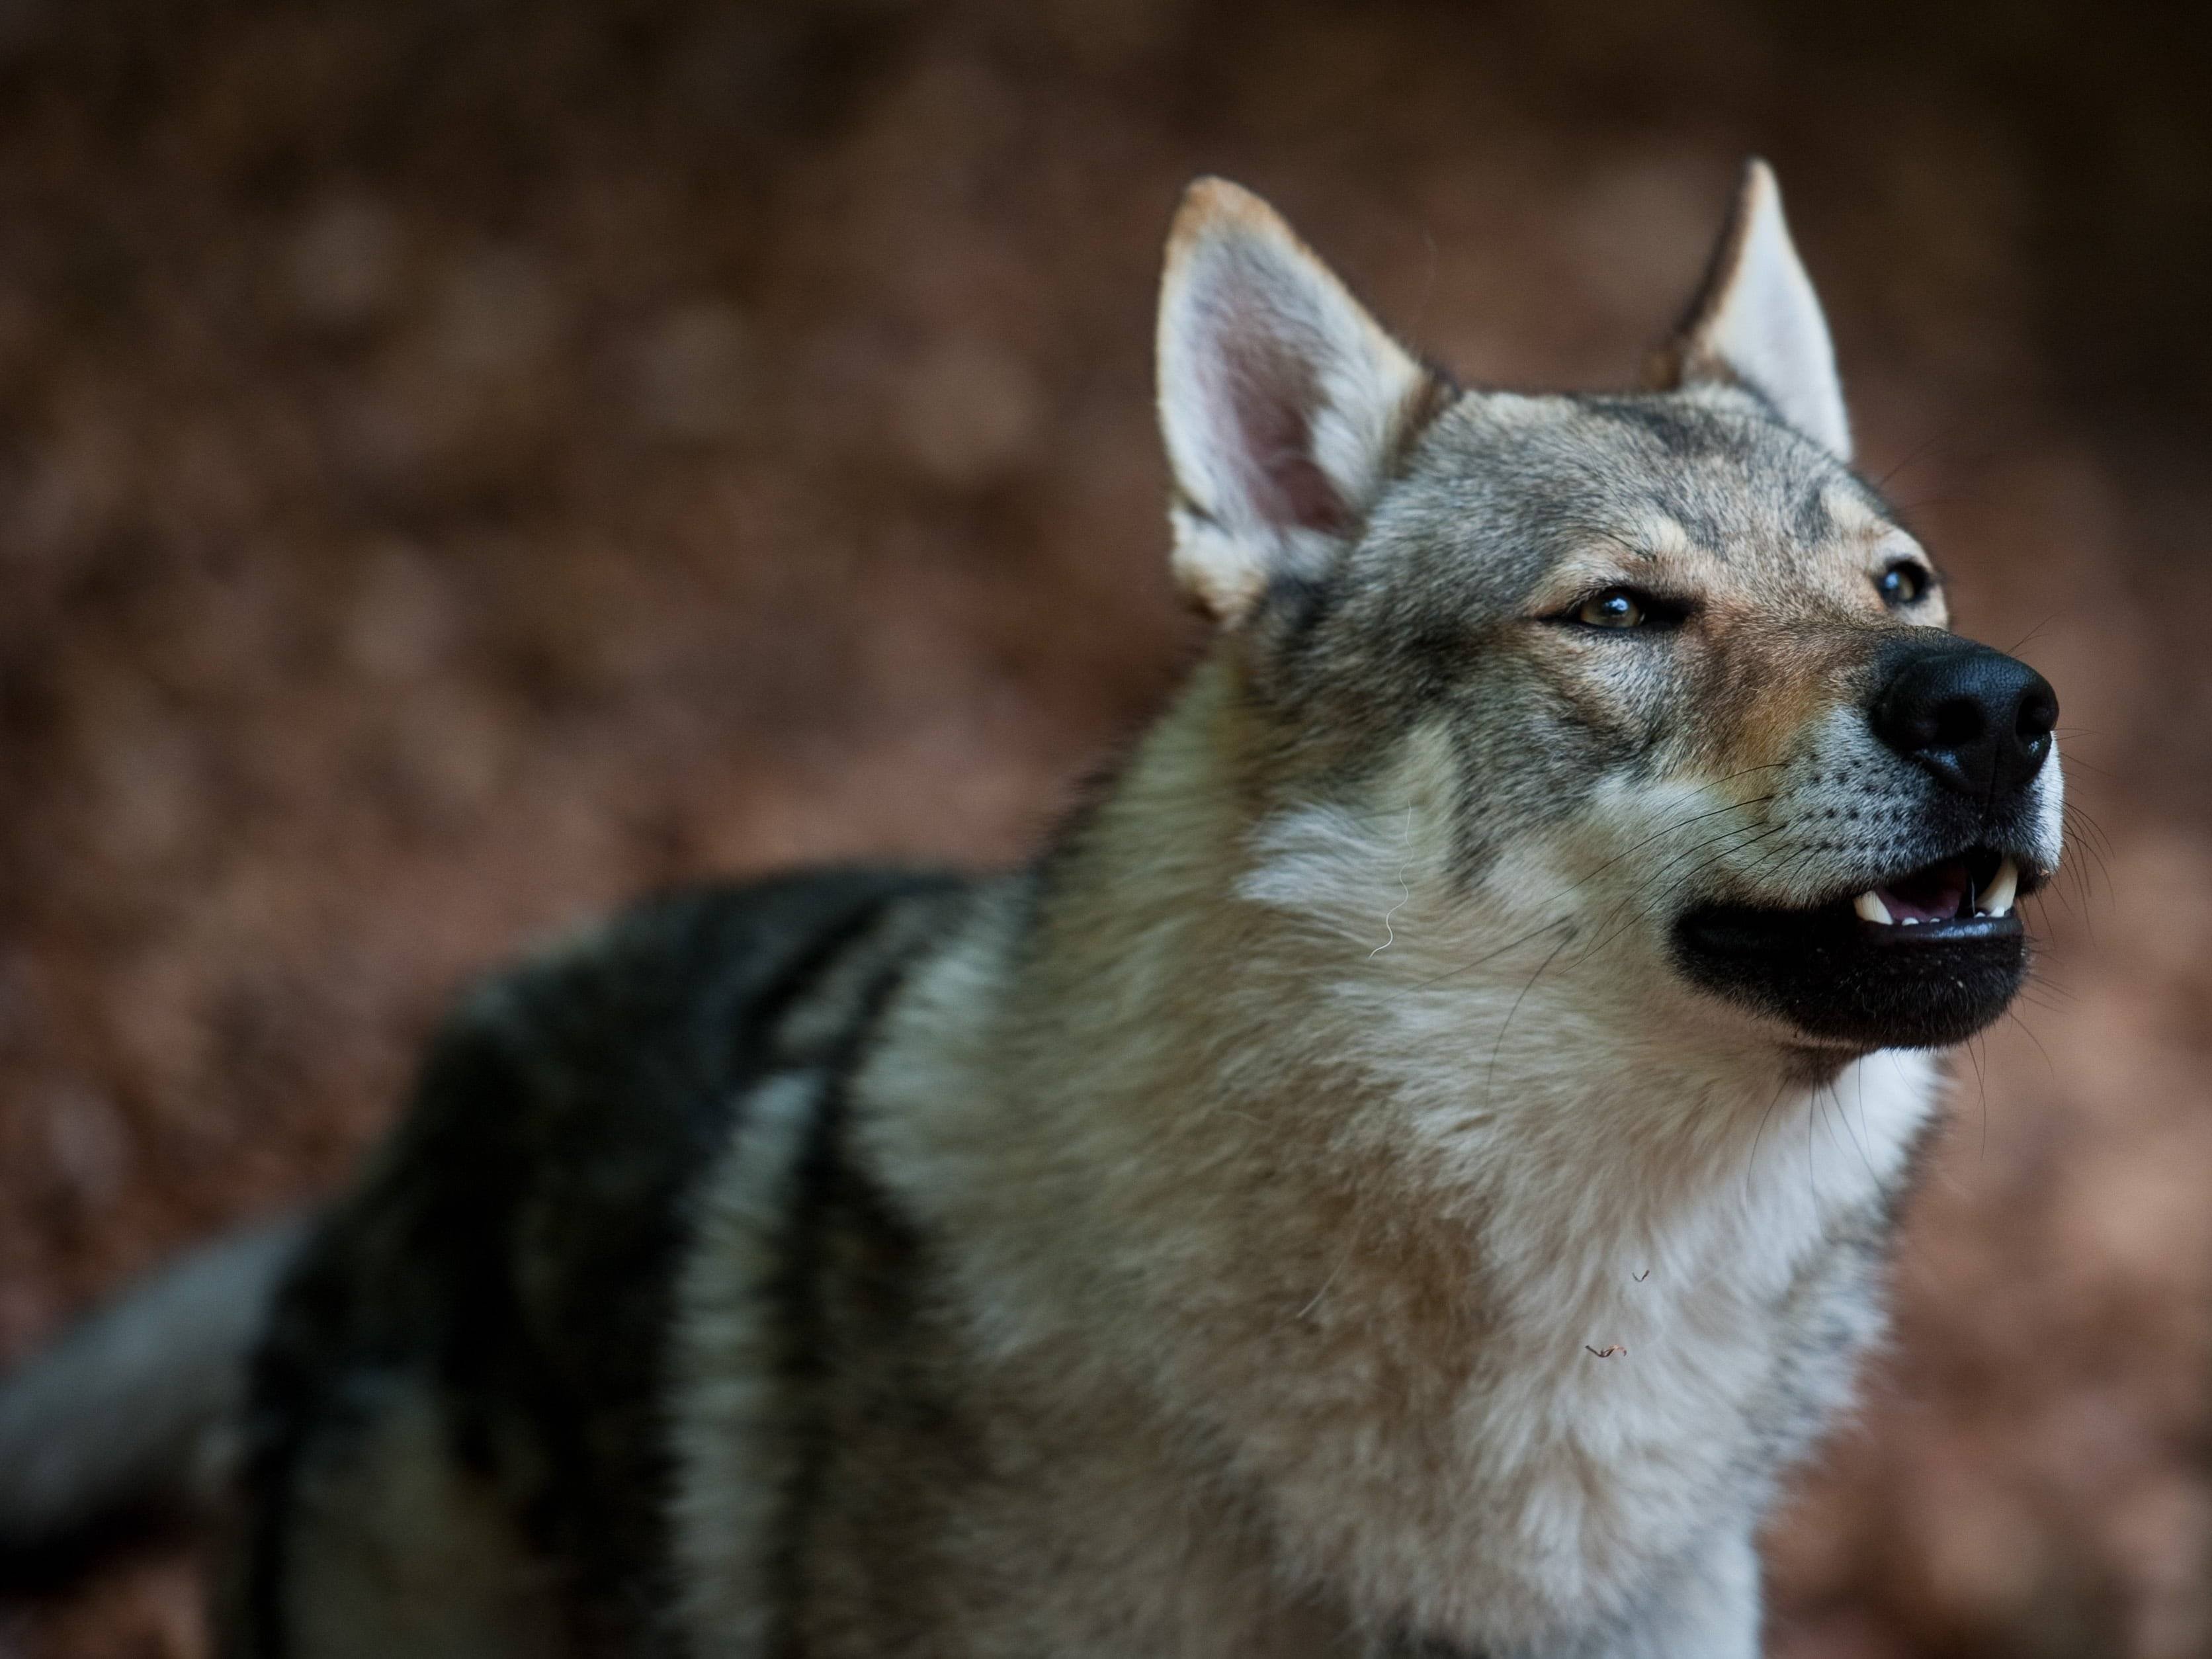 Чехословацкая волчья собака: волк с нежным характером